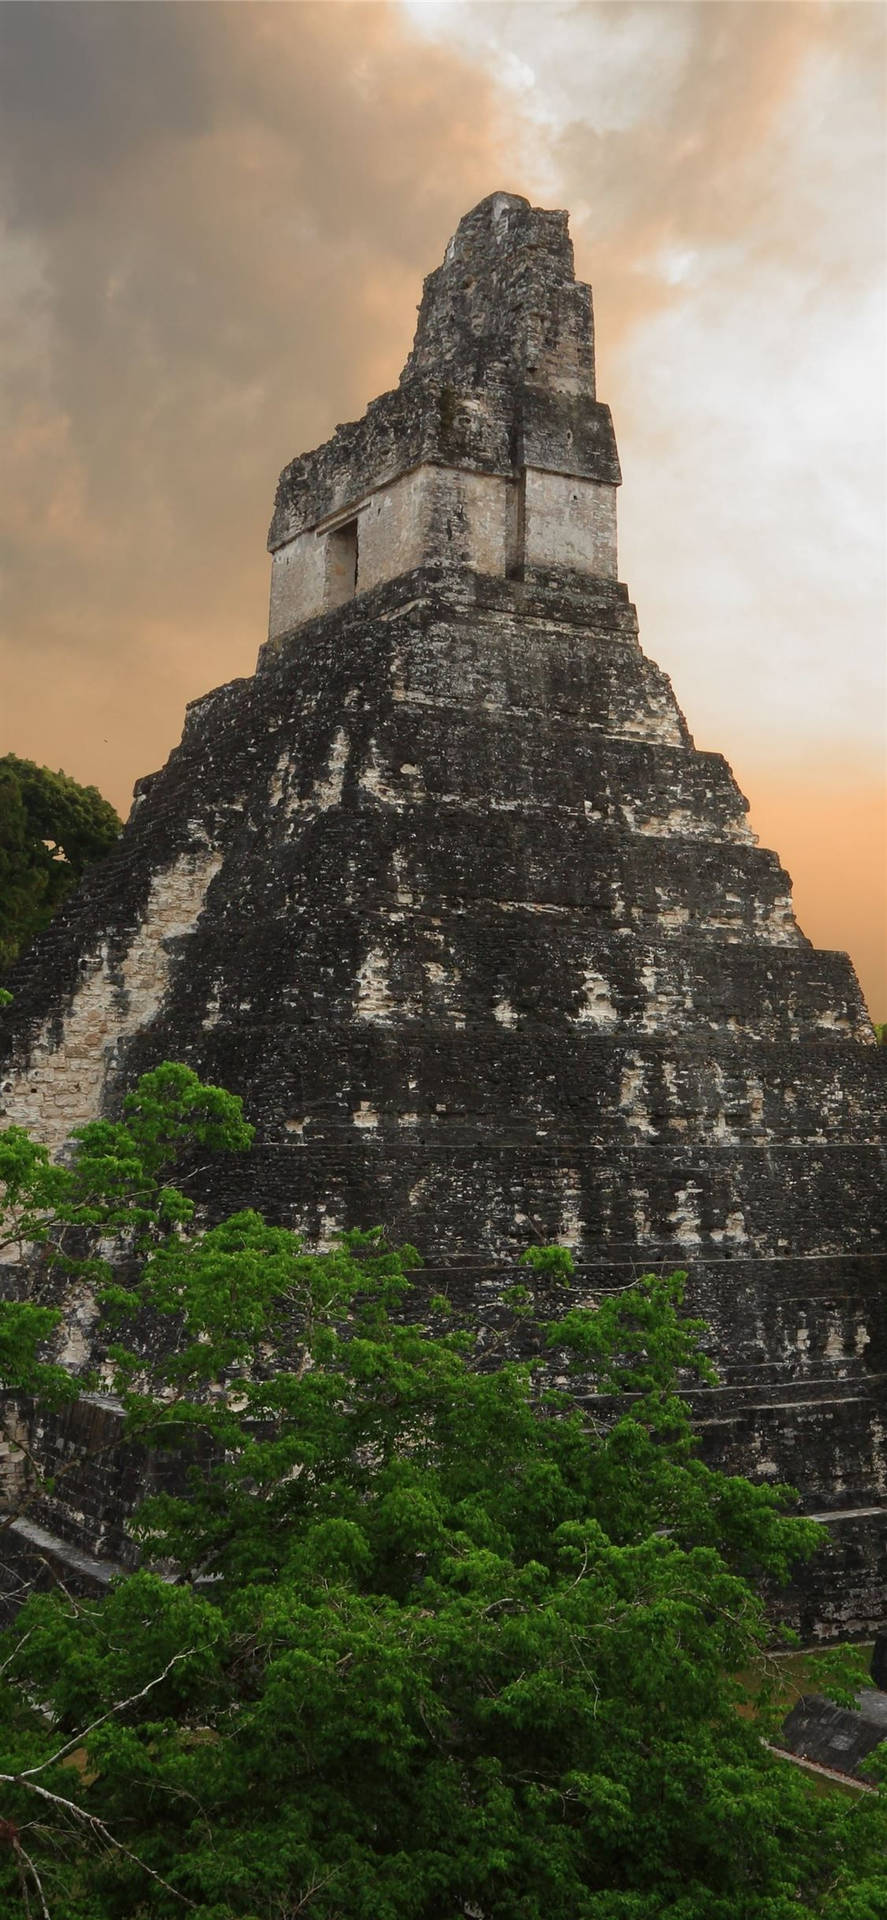 Tikalorange Sky Skulle Kunna Översättas Till Tikal Orangefärgad Himmel. Det Skulle Kunna Vara En Passande Rubrik För En Dator- Eller Mobiltelefon Tapet Som Visar En Orange Solnedgång På Det Antika Maya-templet Tikal. Wallpaper